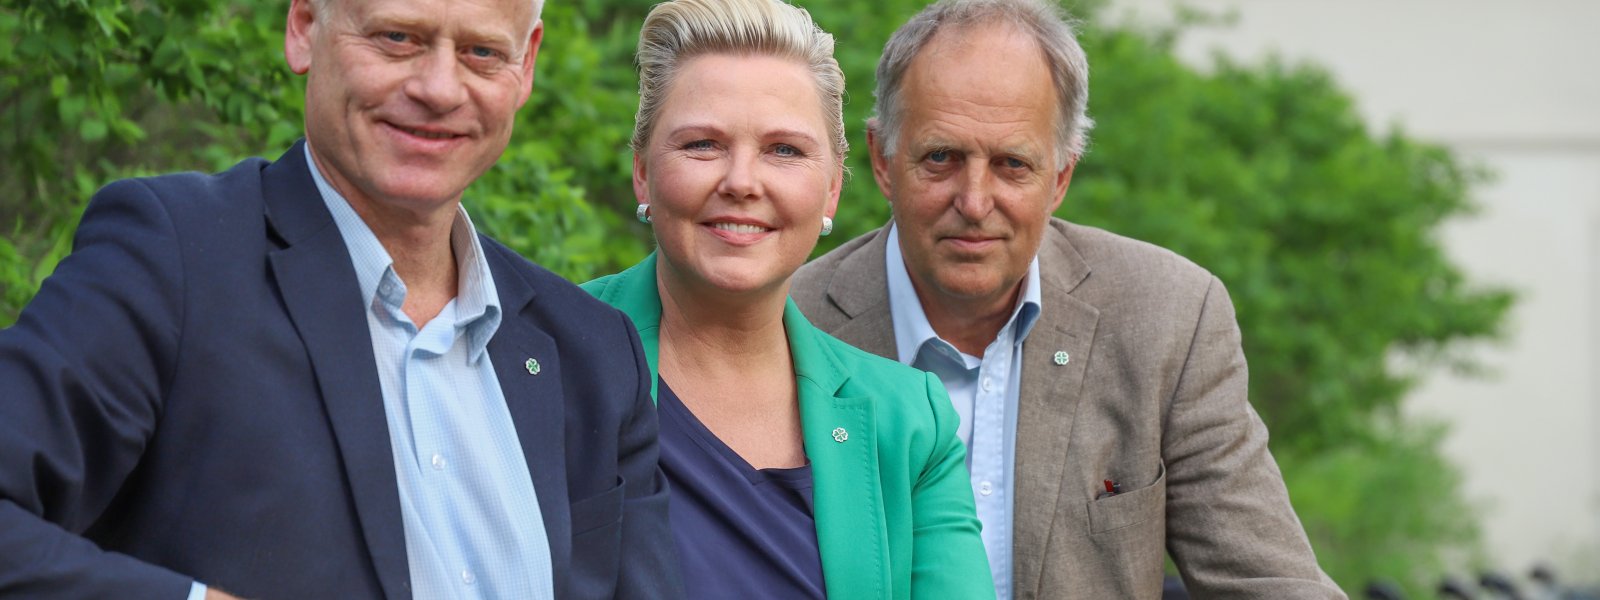 2019 Olav Skinnes, Anne Beathe Kristiansen Tvinnereim og Johan Edvard Grimstad. Valgkampbilde for fylkestingsvalget 2019